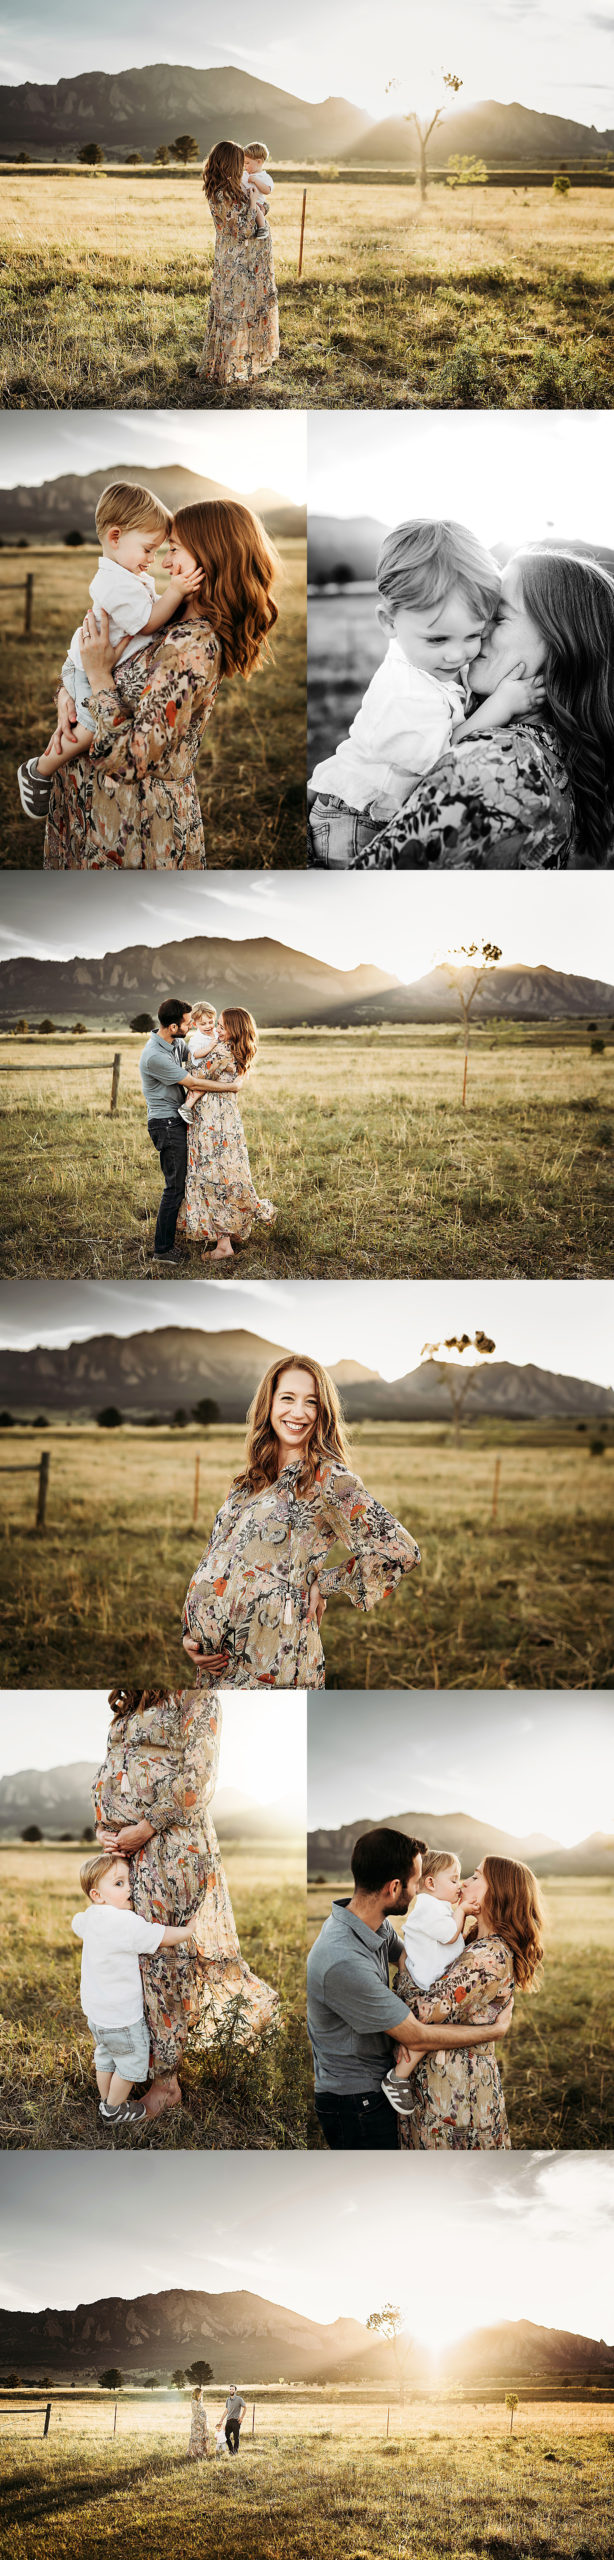 Alex Morris Design Denver Newborn Photographer, maternity, baby, denver